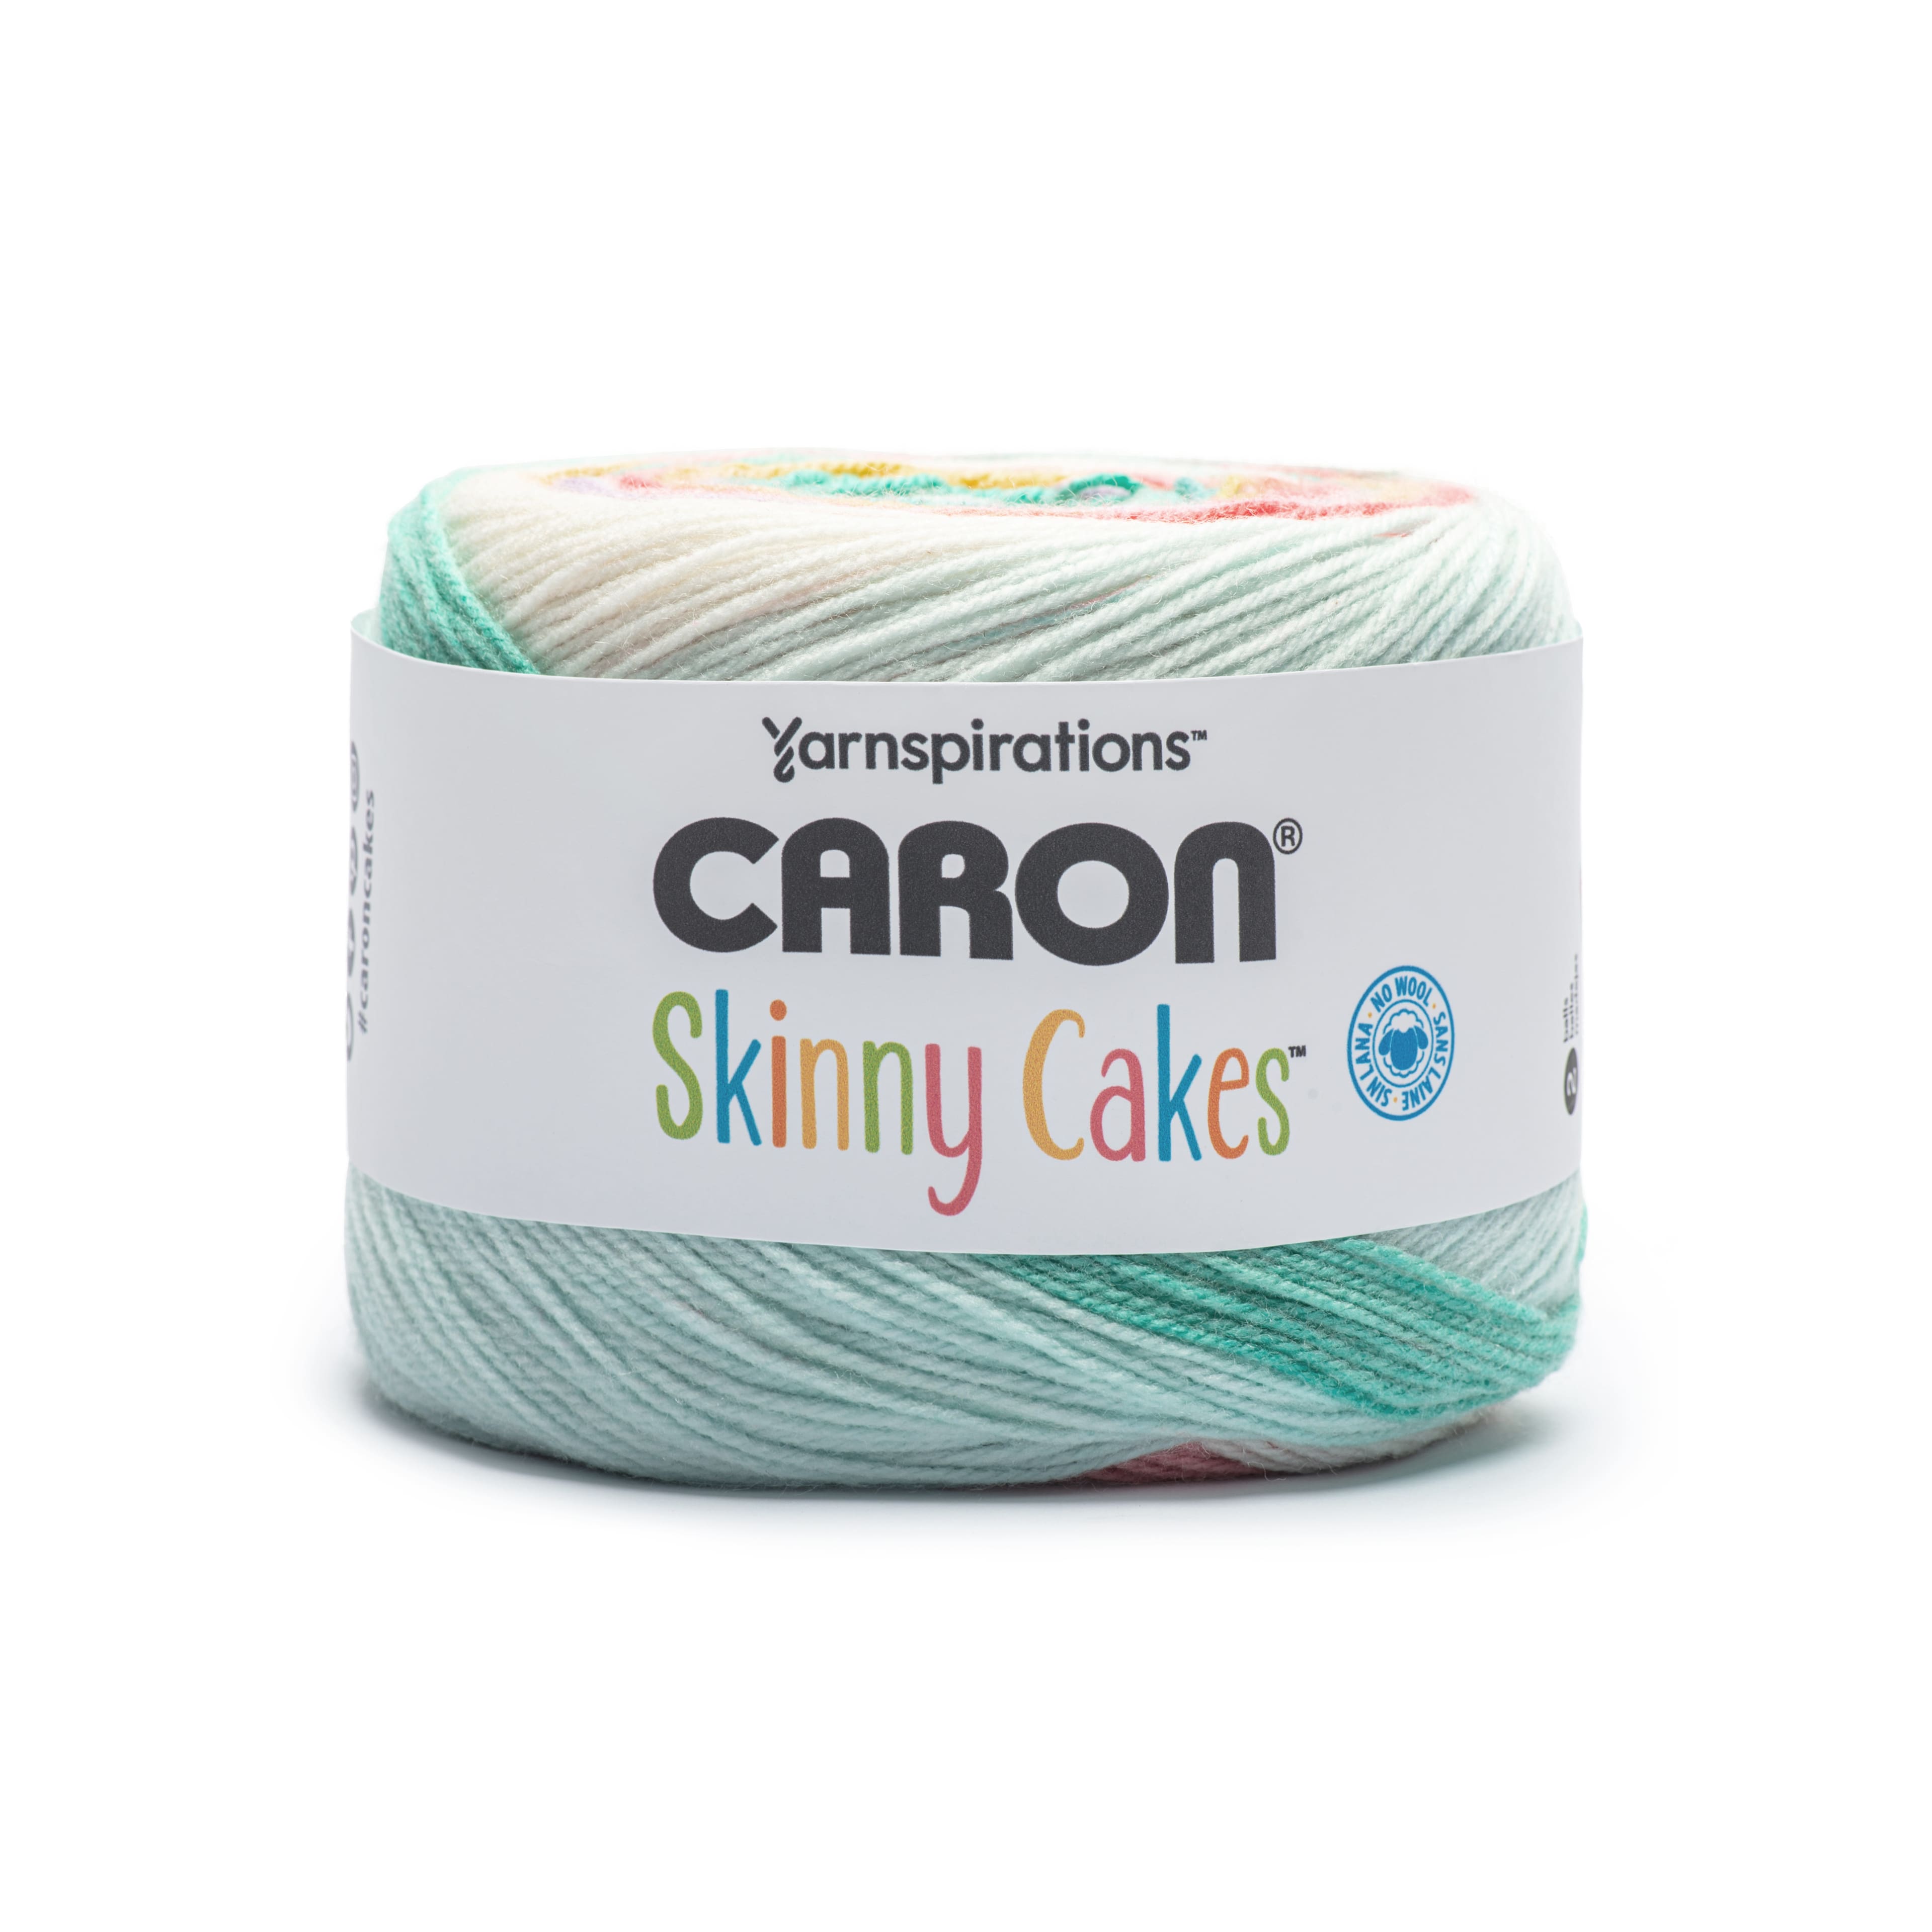 Caron Skinny Cakes